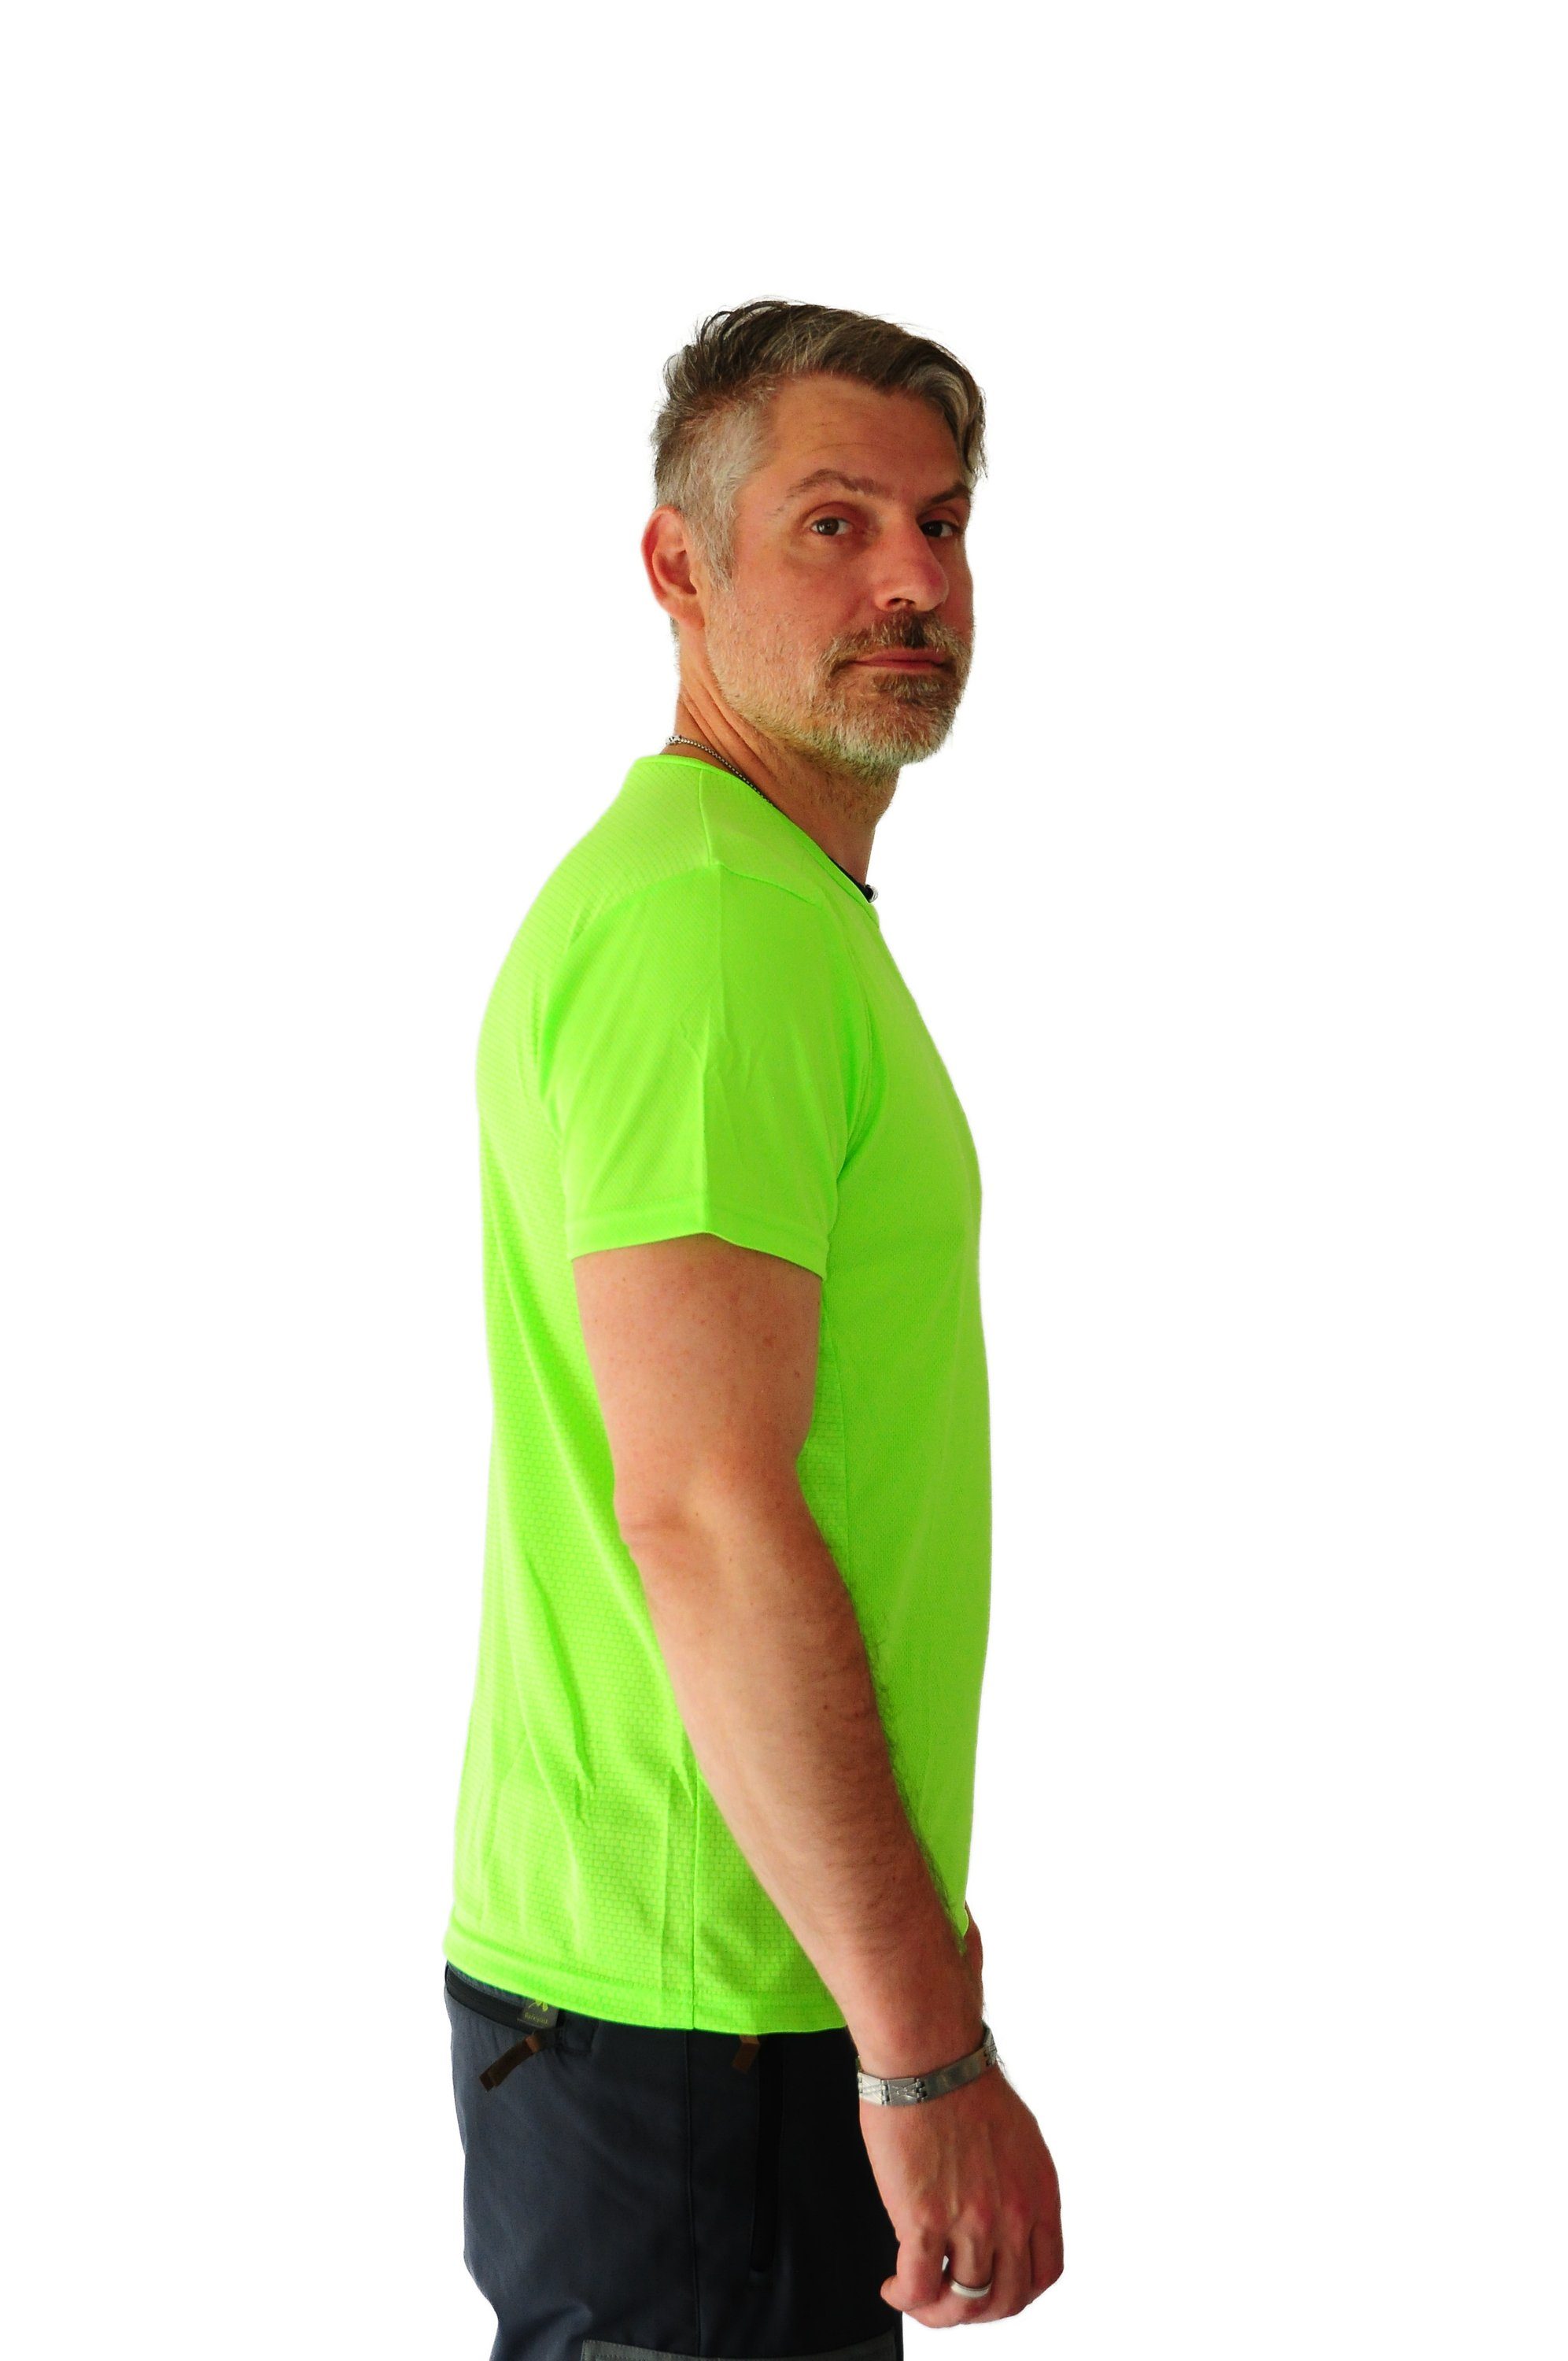 Joluvi T-Shirt Duplex für Herren, Verde Neon schnelltrocknend